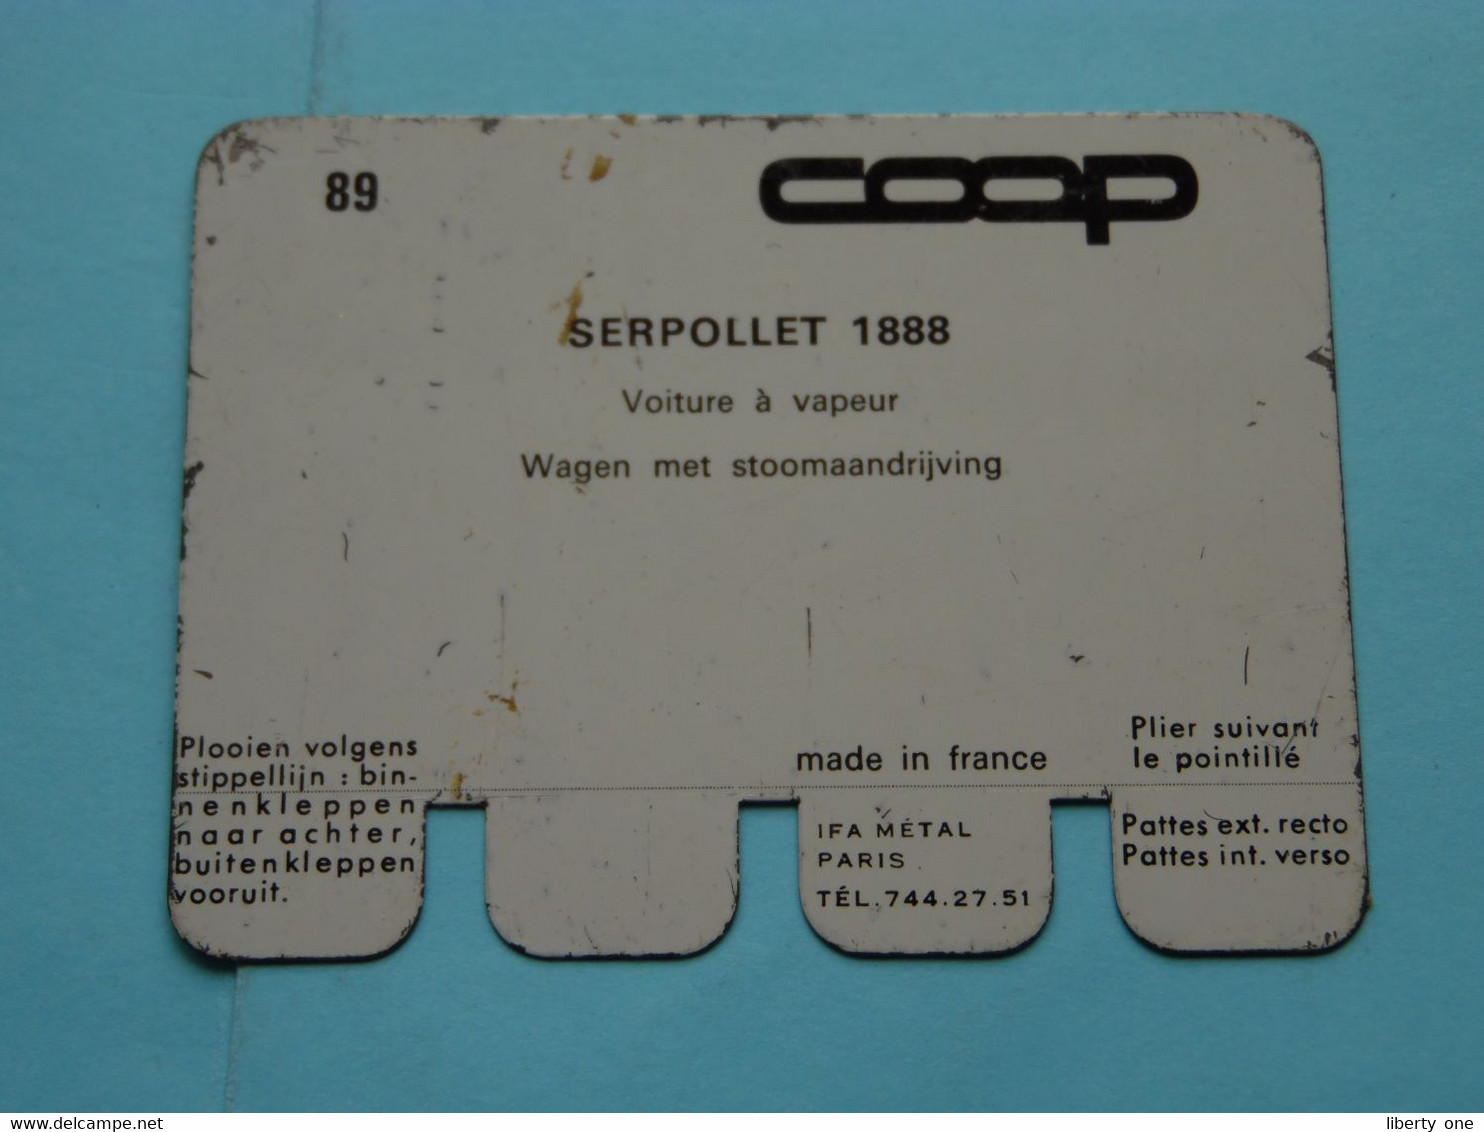 SERPOLLET 1888 - Coll. N° 89 NL/FR ( Plaquette C O O P - Voir Photo - IFA Metal Paris ) ! - Tin Signs (vanaf 1961)